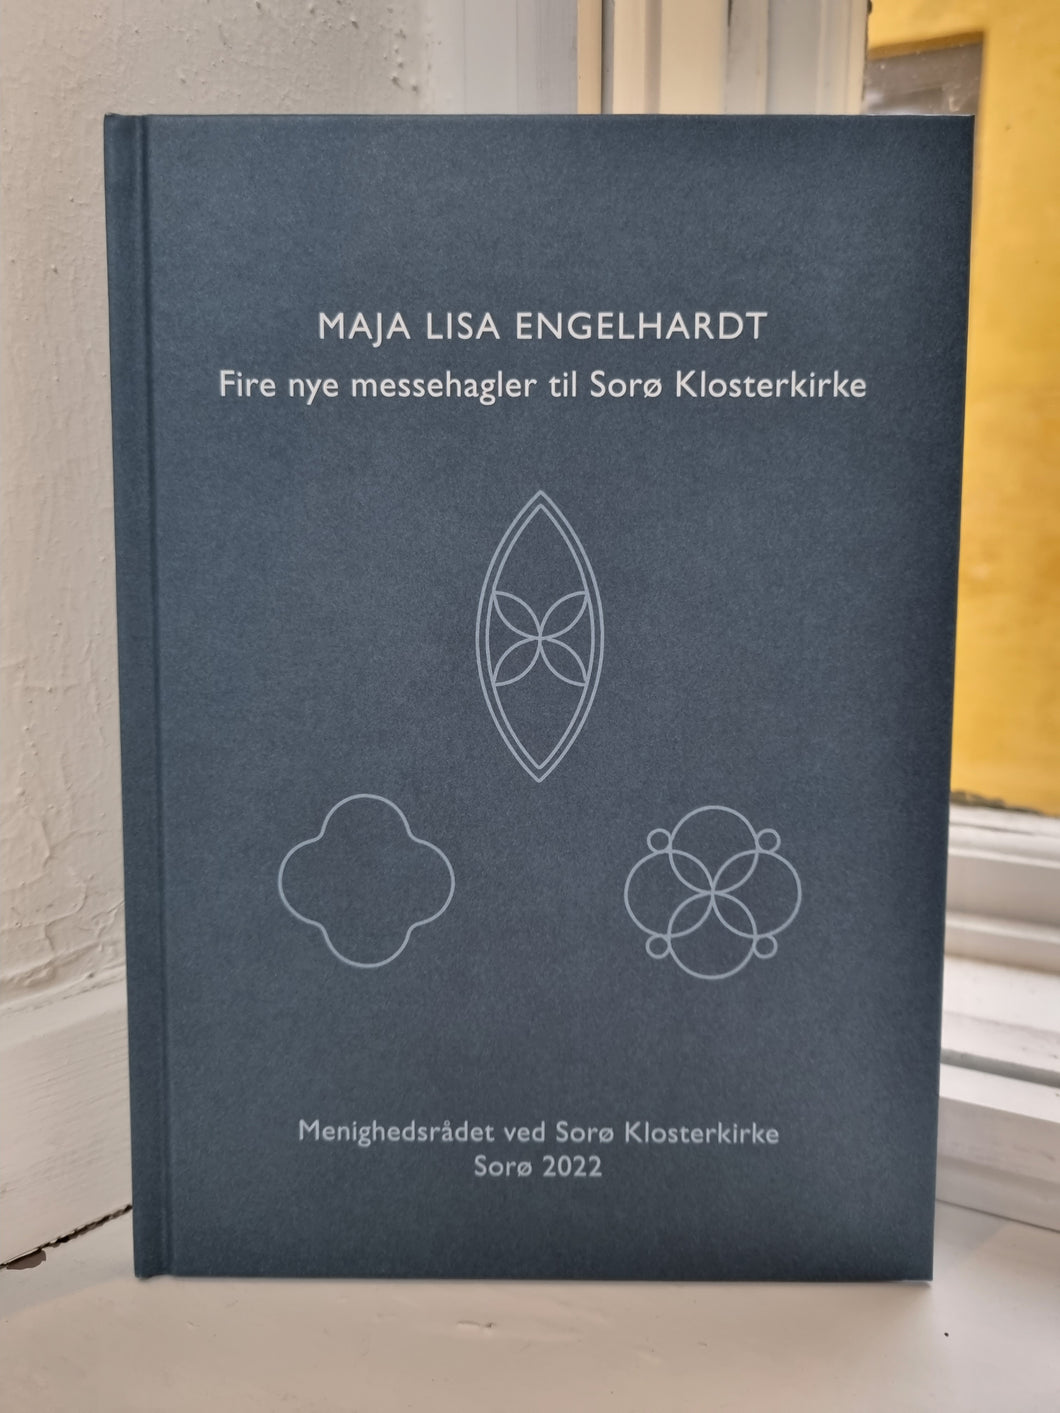 Maja Lisa Engelhardt - Fire nye messehagler til Sorø Klosterkirke